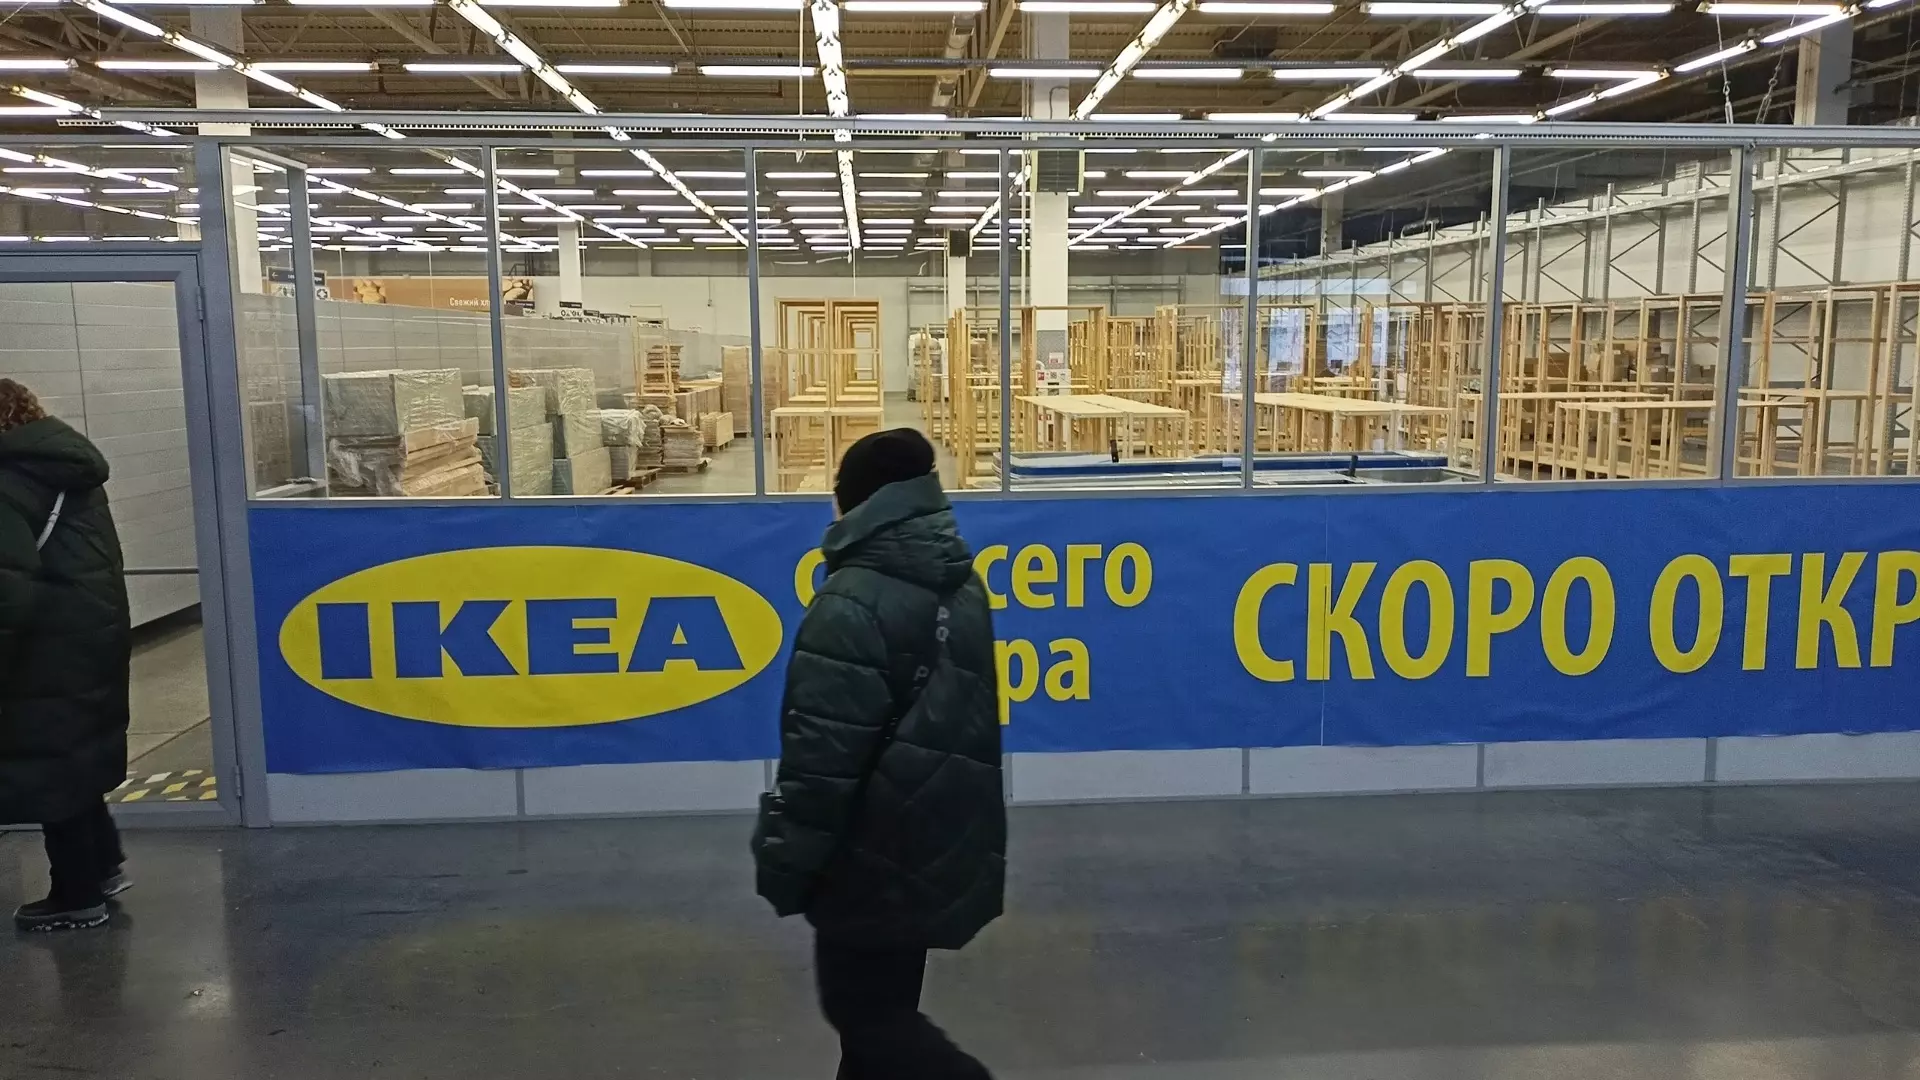 Магазин с товарами ИКЕА открылся в Новосибирске с ценниками выше в два раза